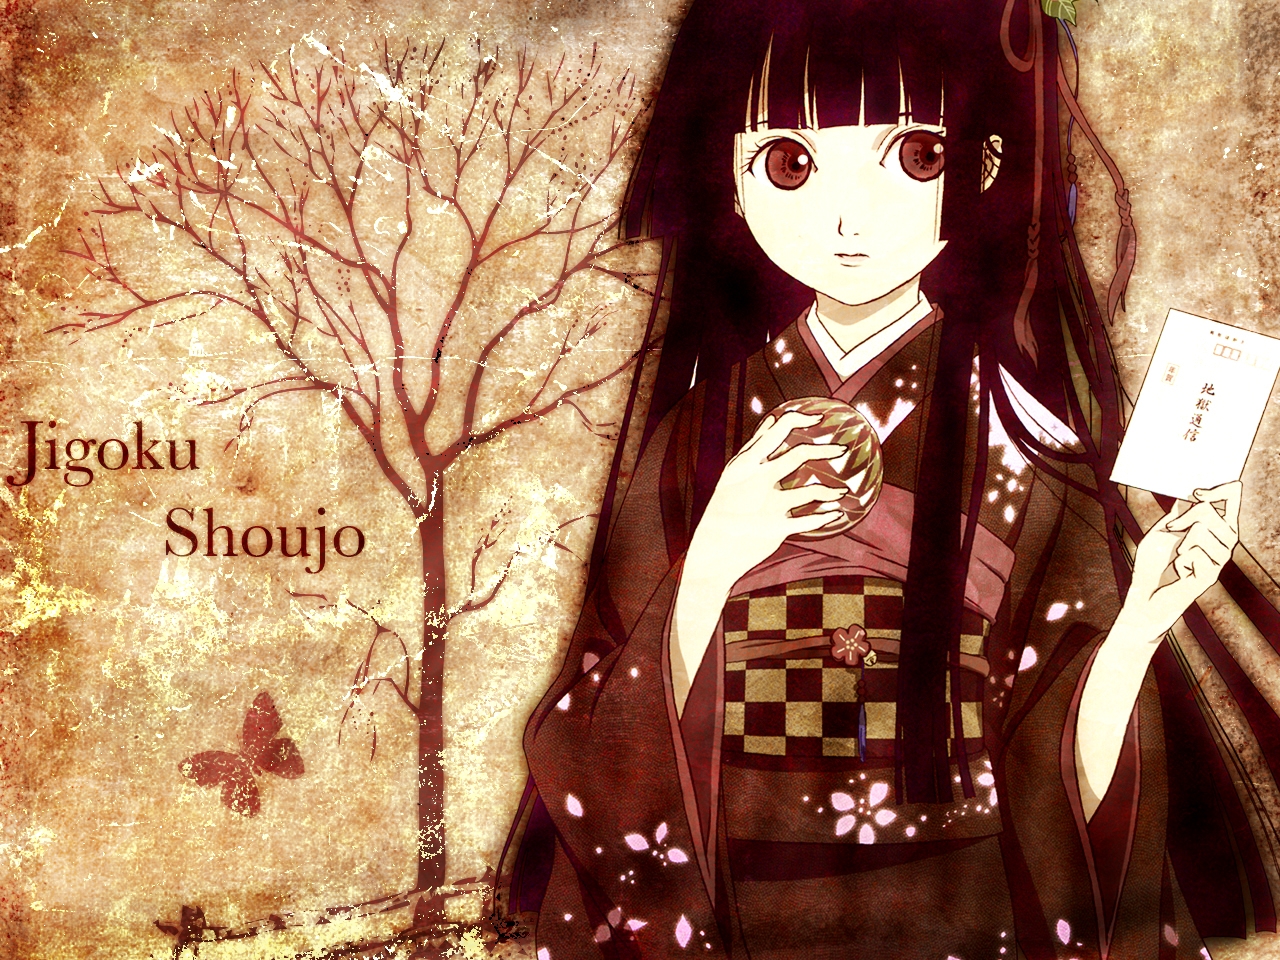 Baixe gratuitamente a imagem Anime, Jigoku Shoujo na área de trabalho do seu PC